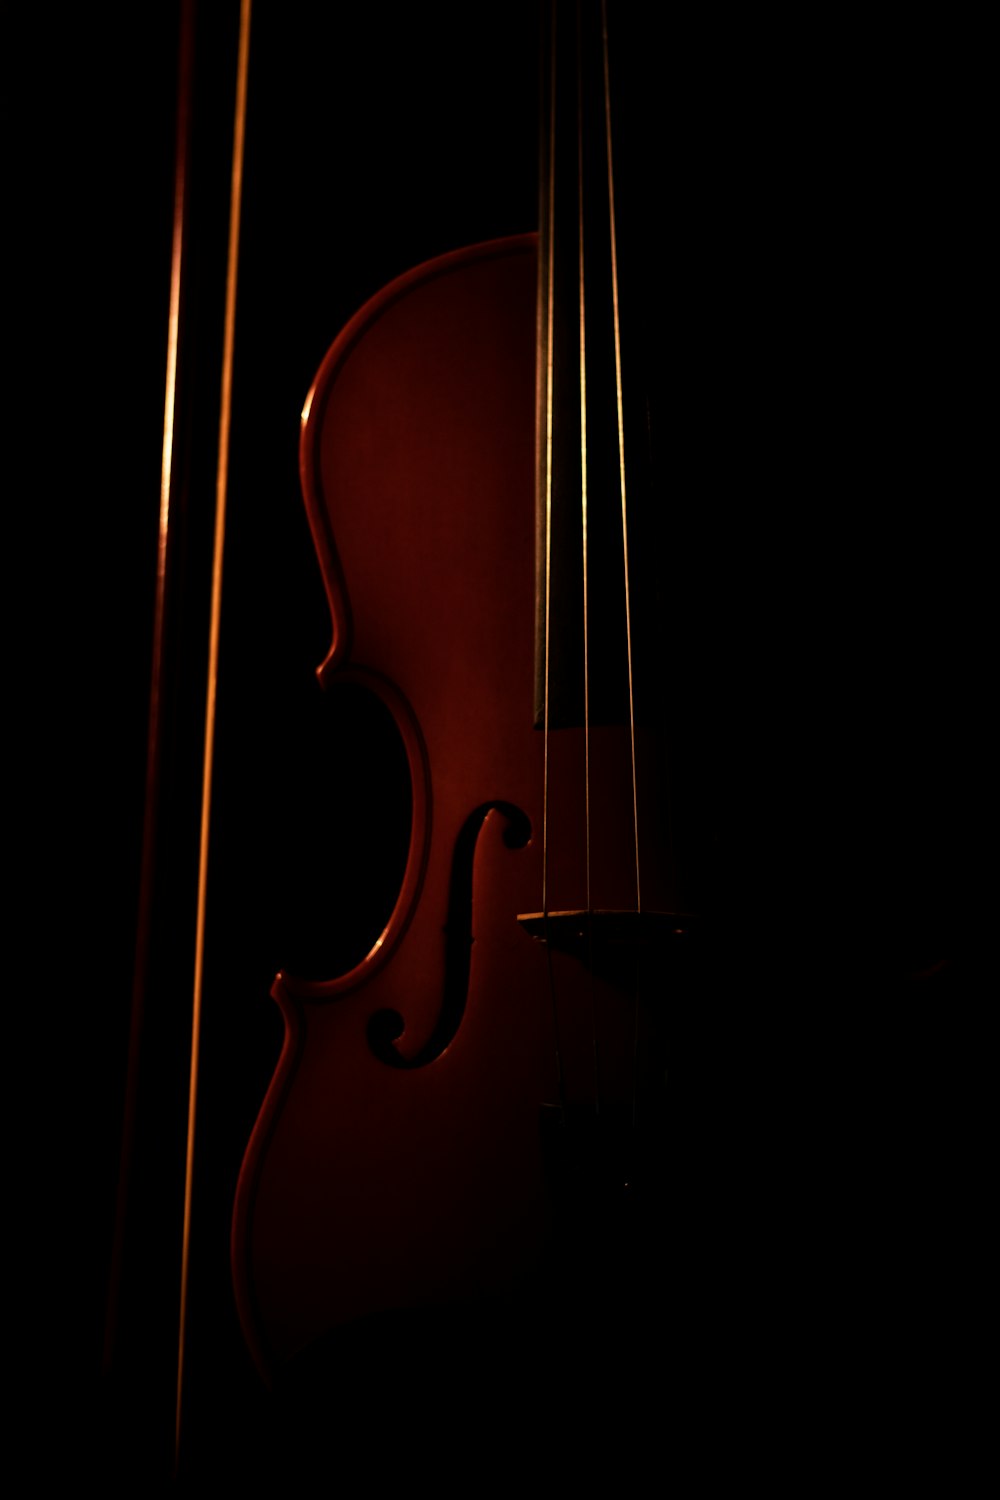 violon marron sur fond noir